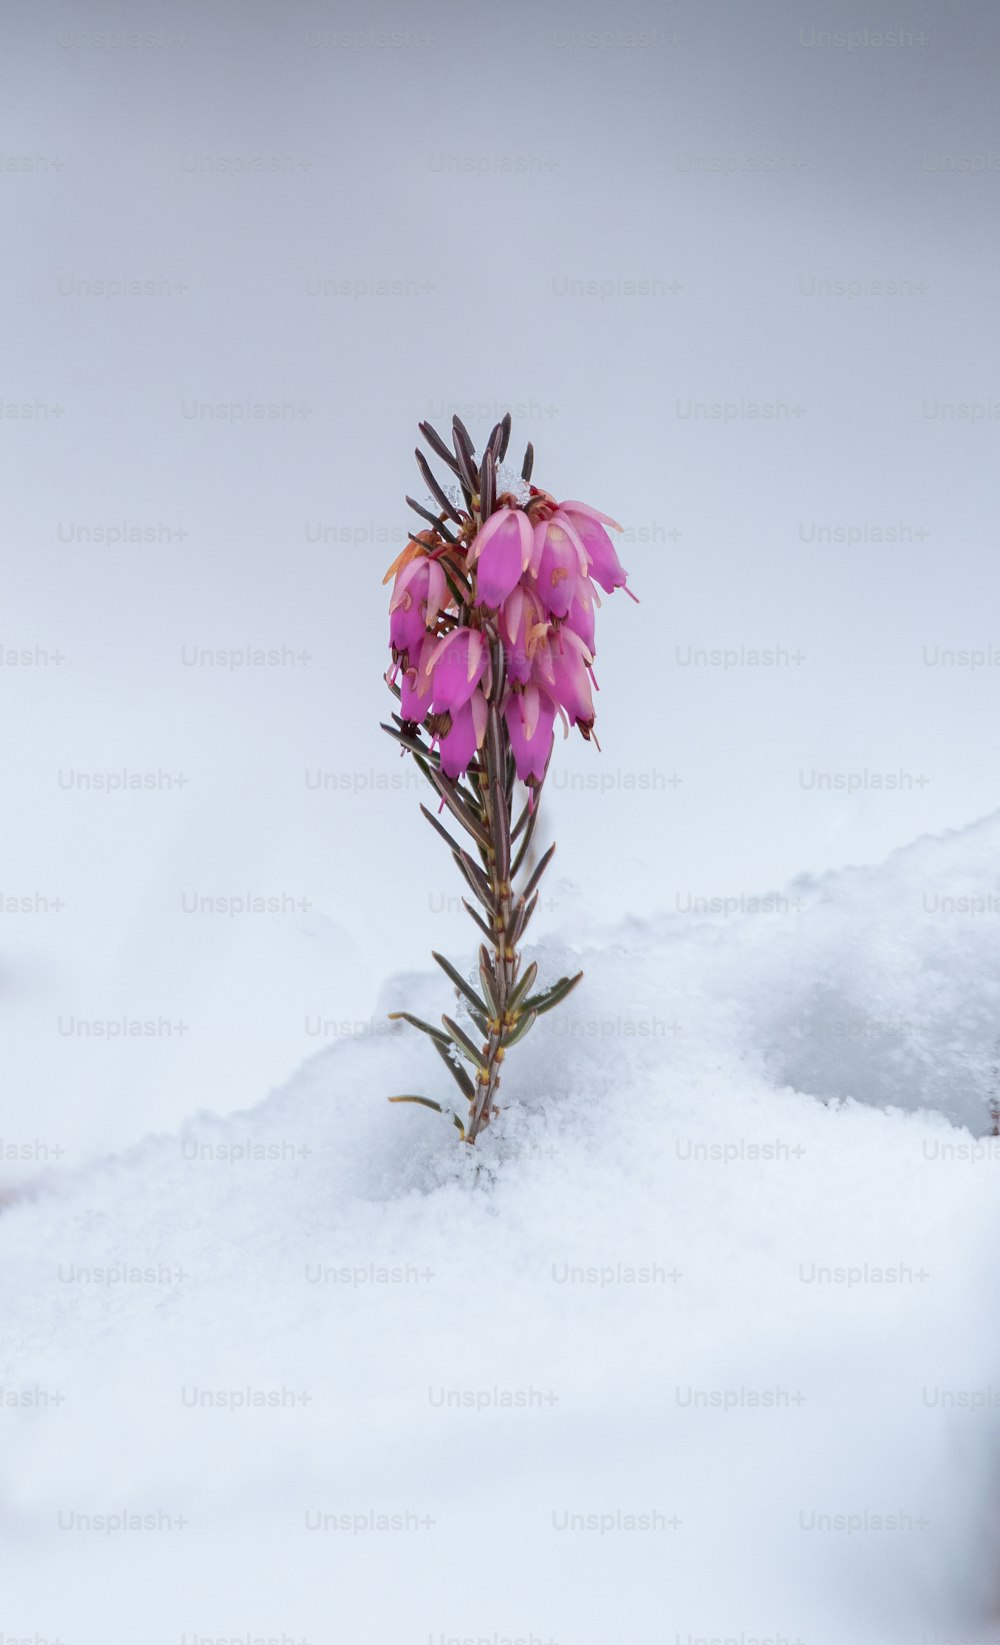 un fiore rosa seduto sopra il terreno coperto di neve